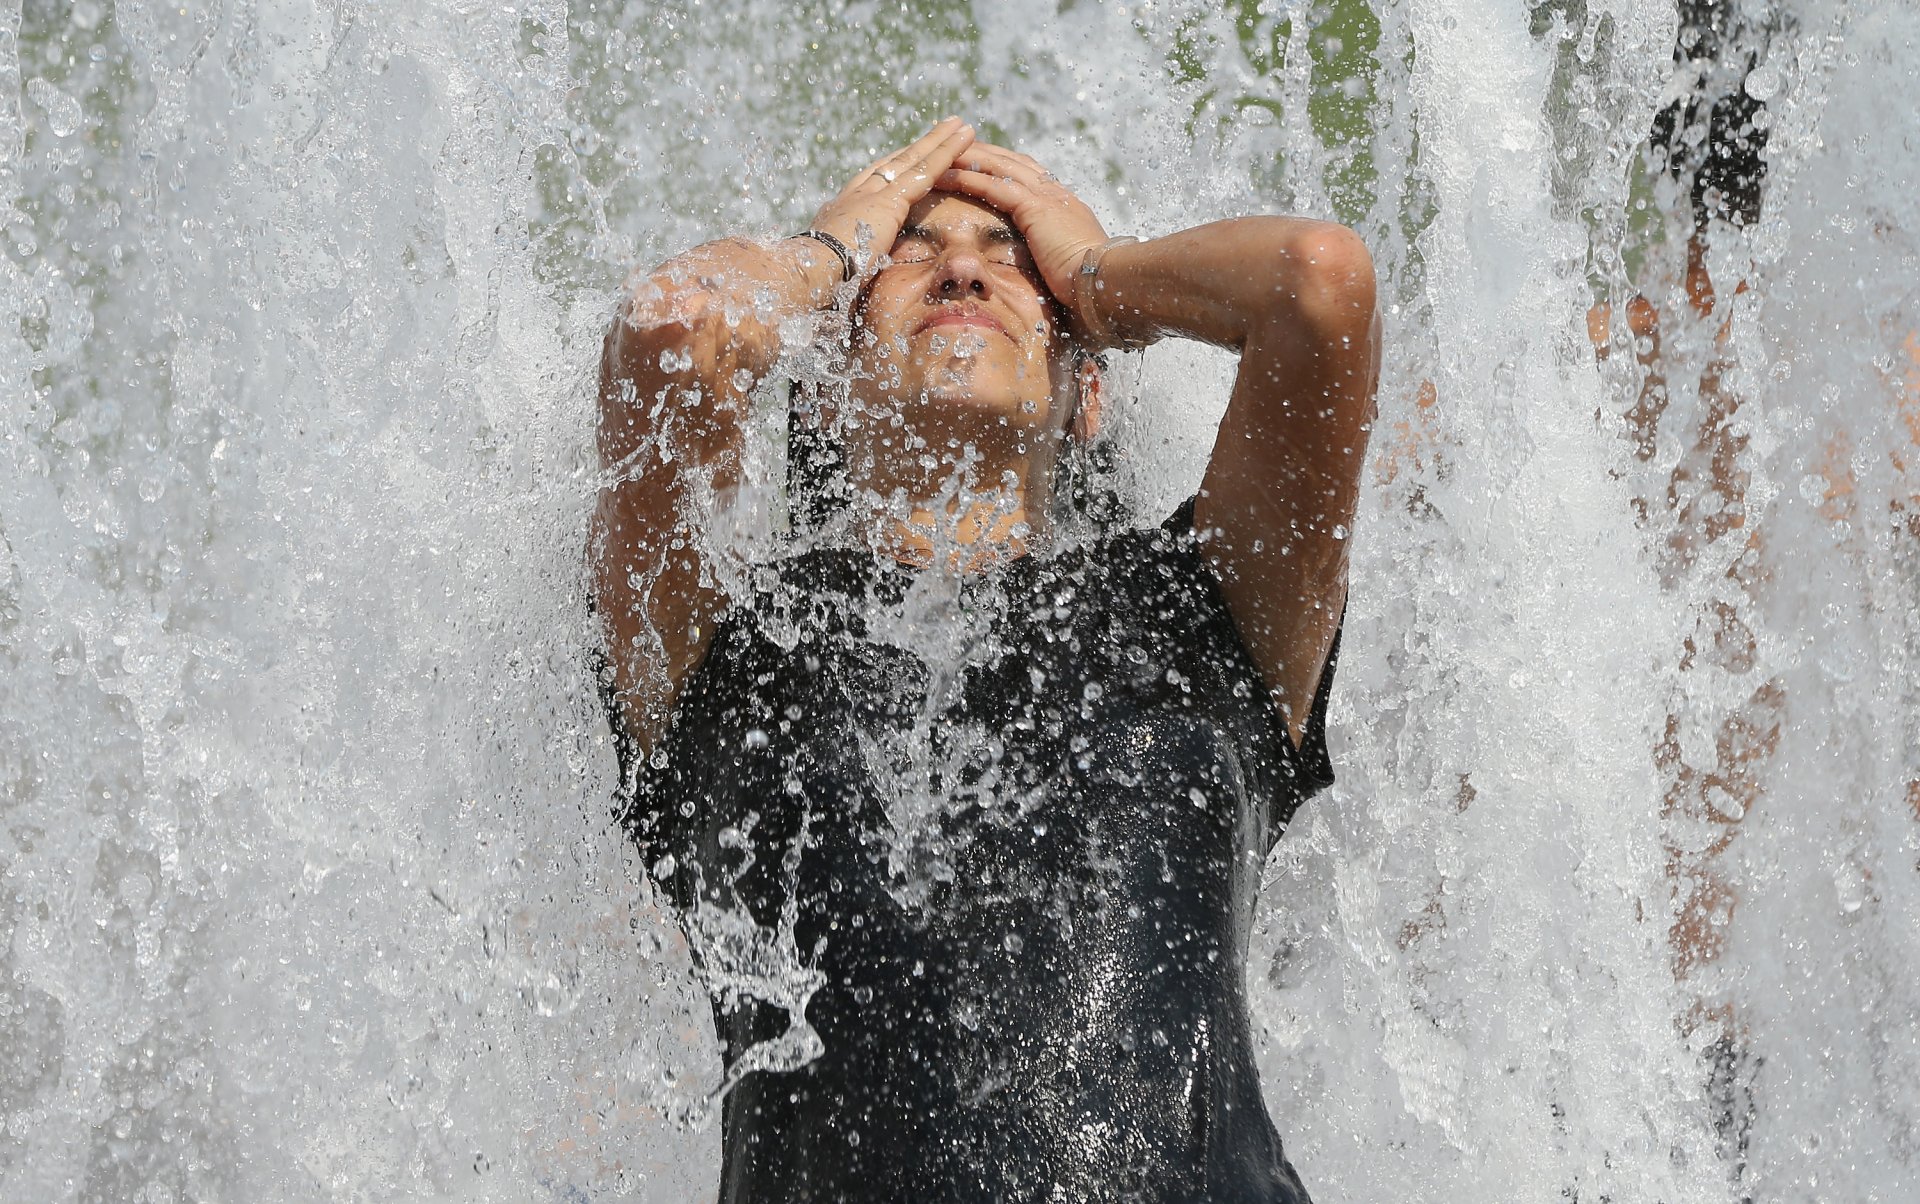  Млада жена от Бразилия се разхлажда във фонтан в горещ летен ден в центъра на града на 20 юни 2013 г. в Берлин, Германия. Централна Европа е в плен на гореща вълна, при която температурите в някои региони достигнаха до 38 градуса по Целзий.